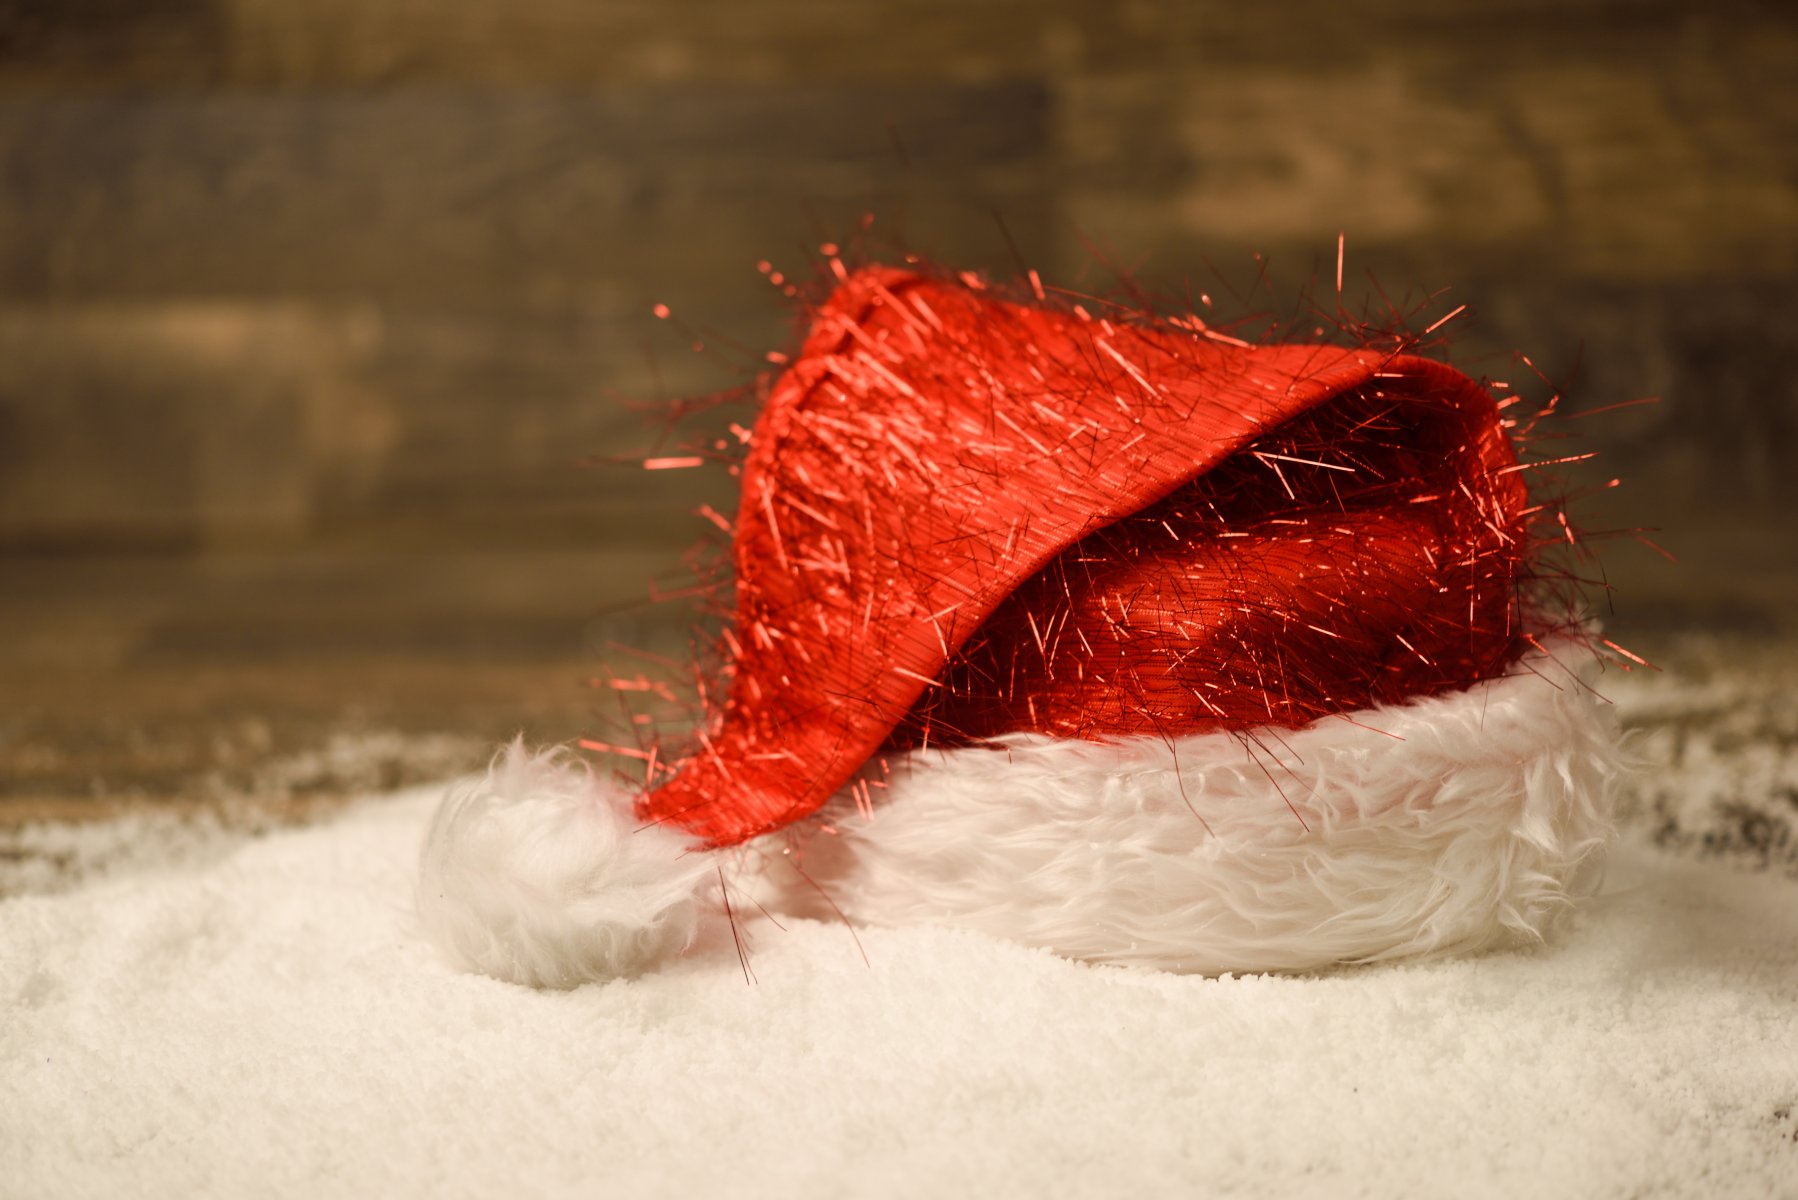 Колпаки Деда Мороза и рождественский венок: в новогоднюю ночь пассажиры московского транспорта забыли более 150 вещей